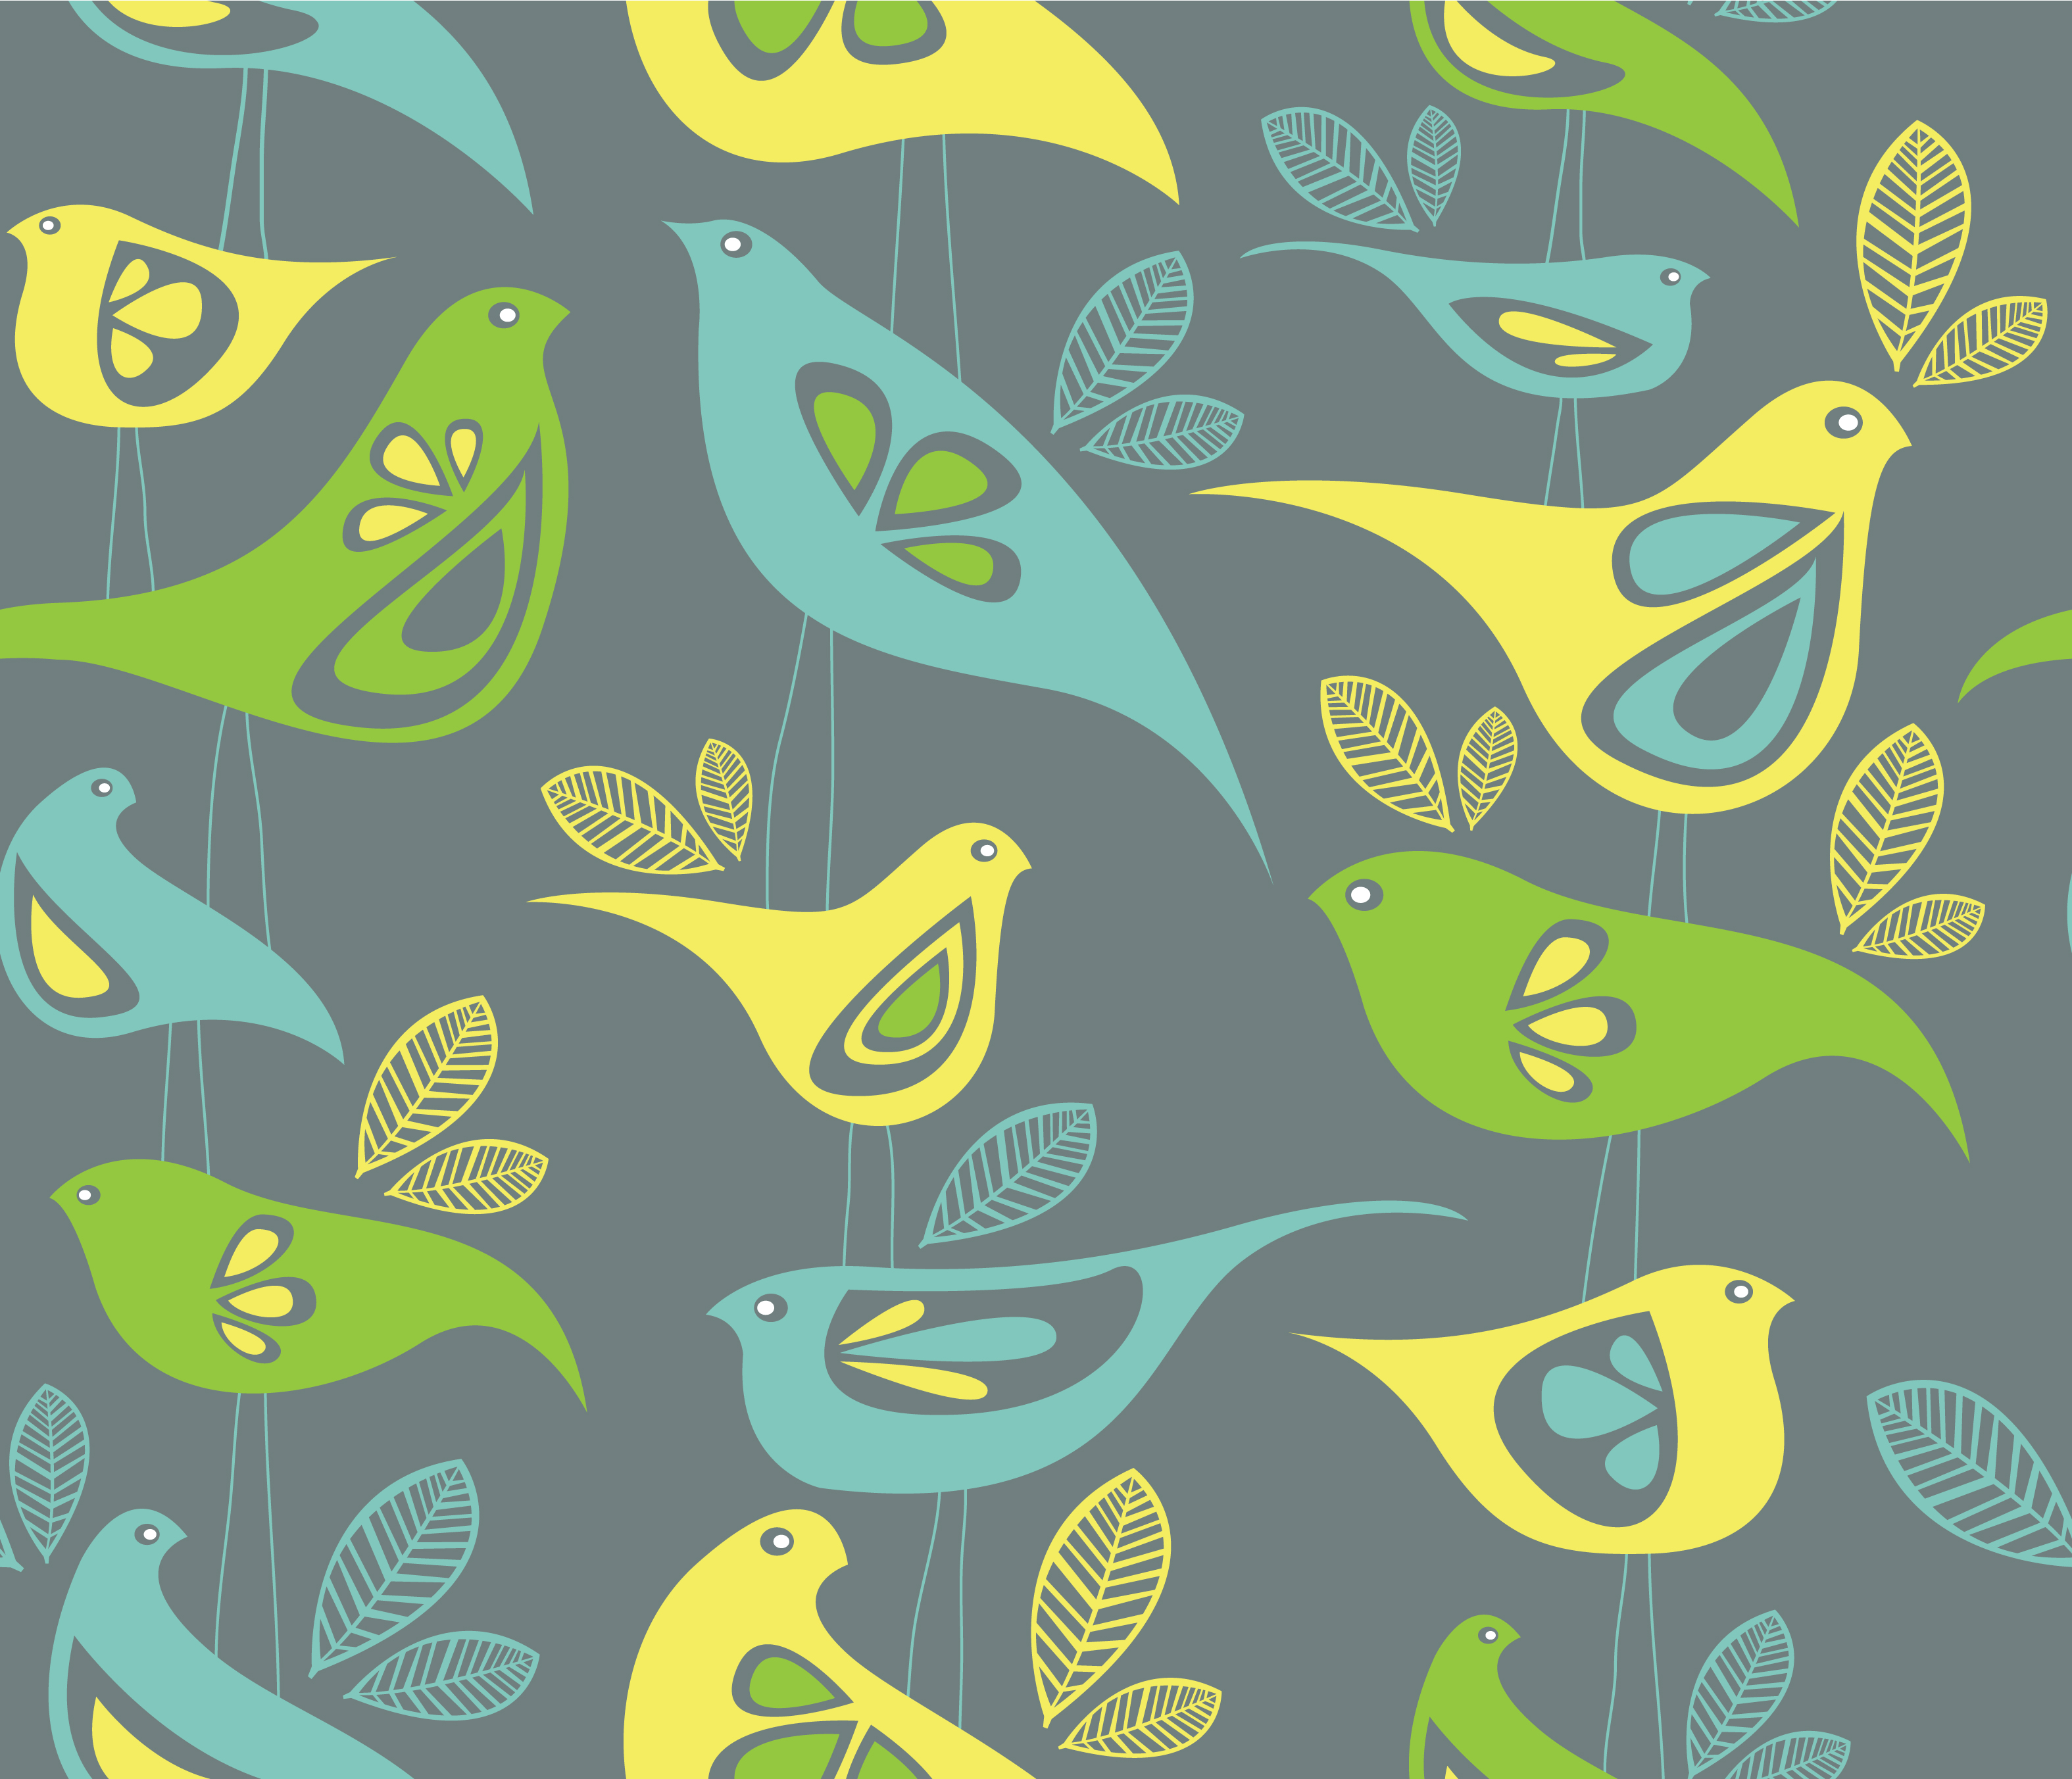 Fancy Birds' fabric design … in the Top 10! | sketchcreative